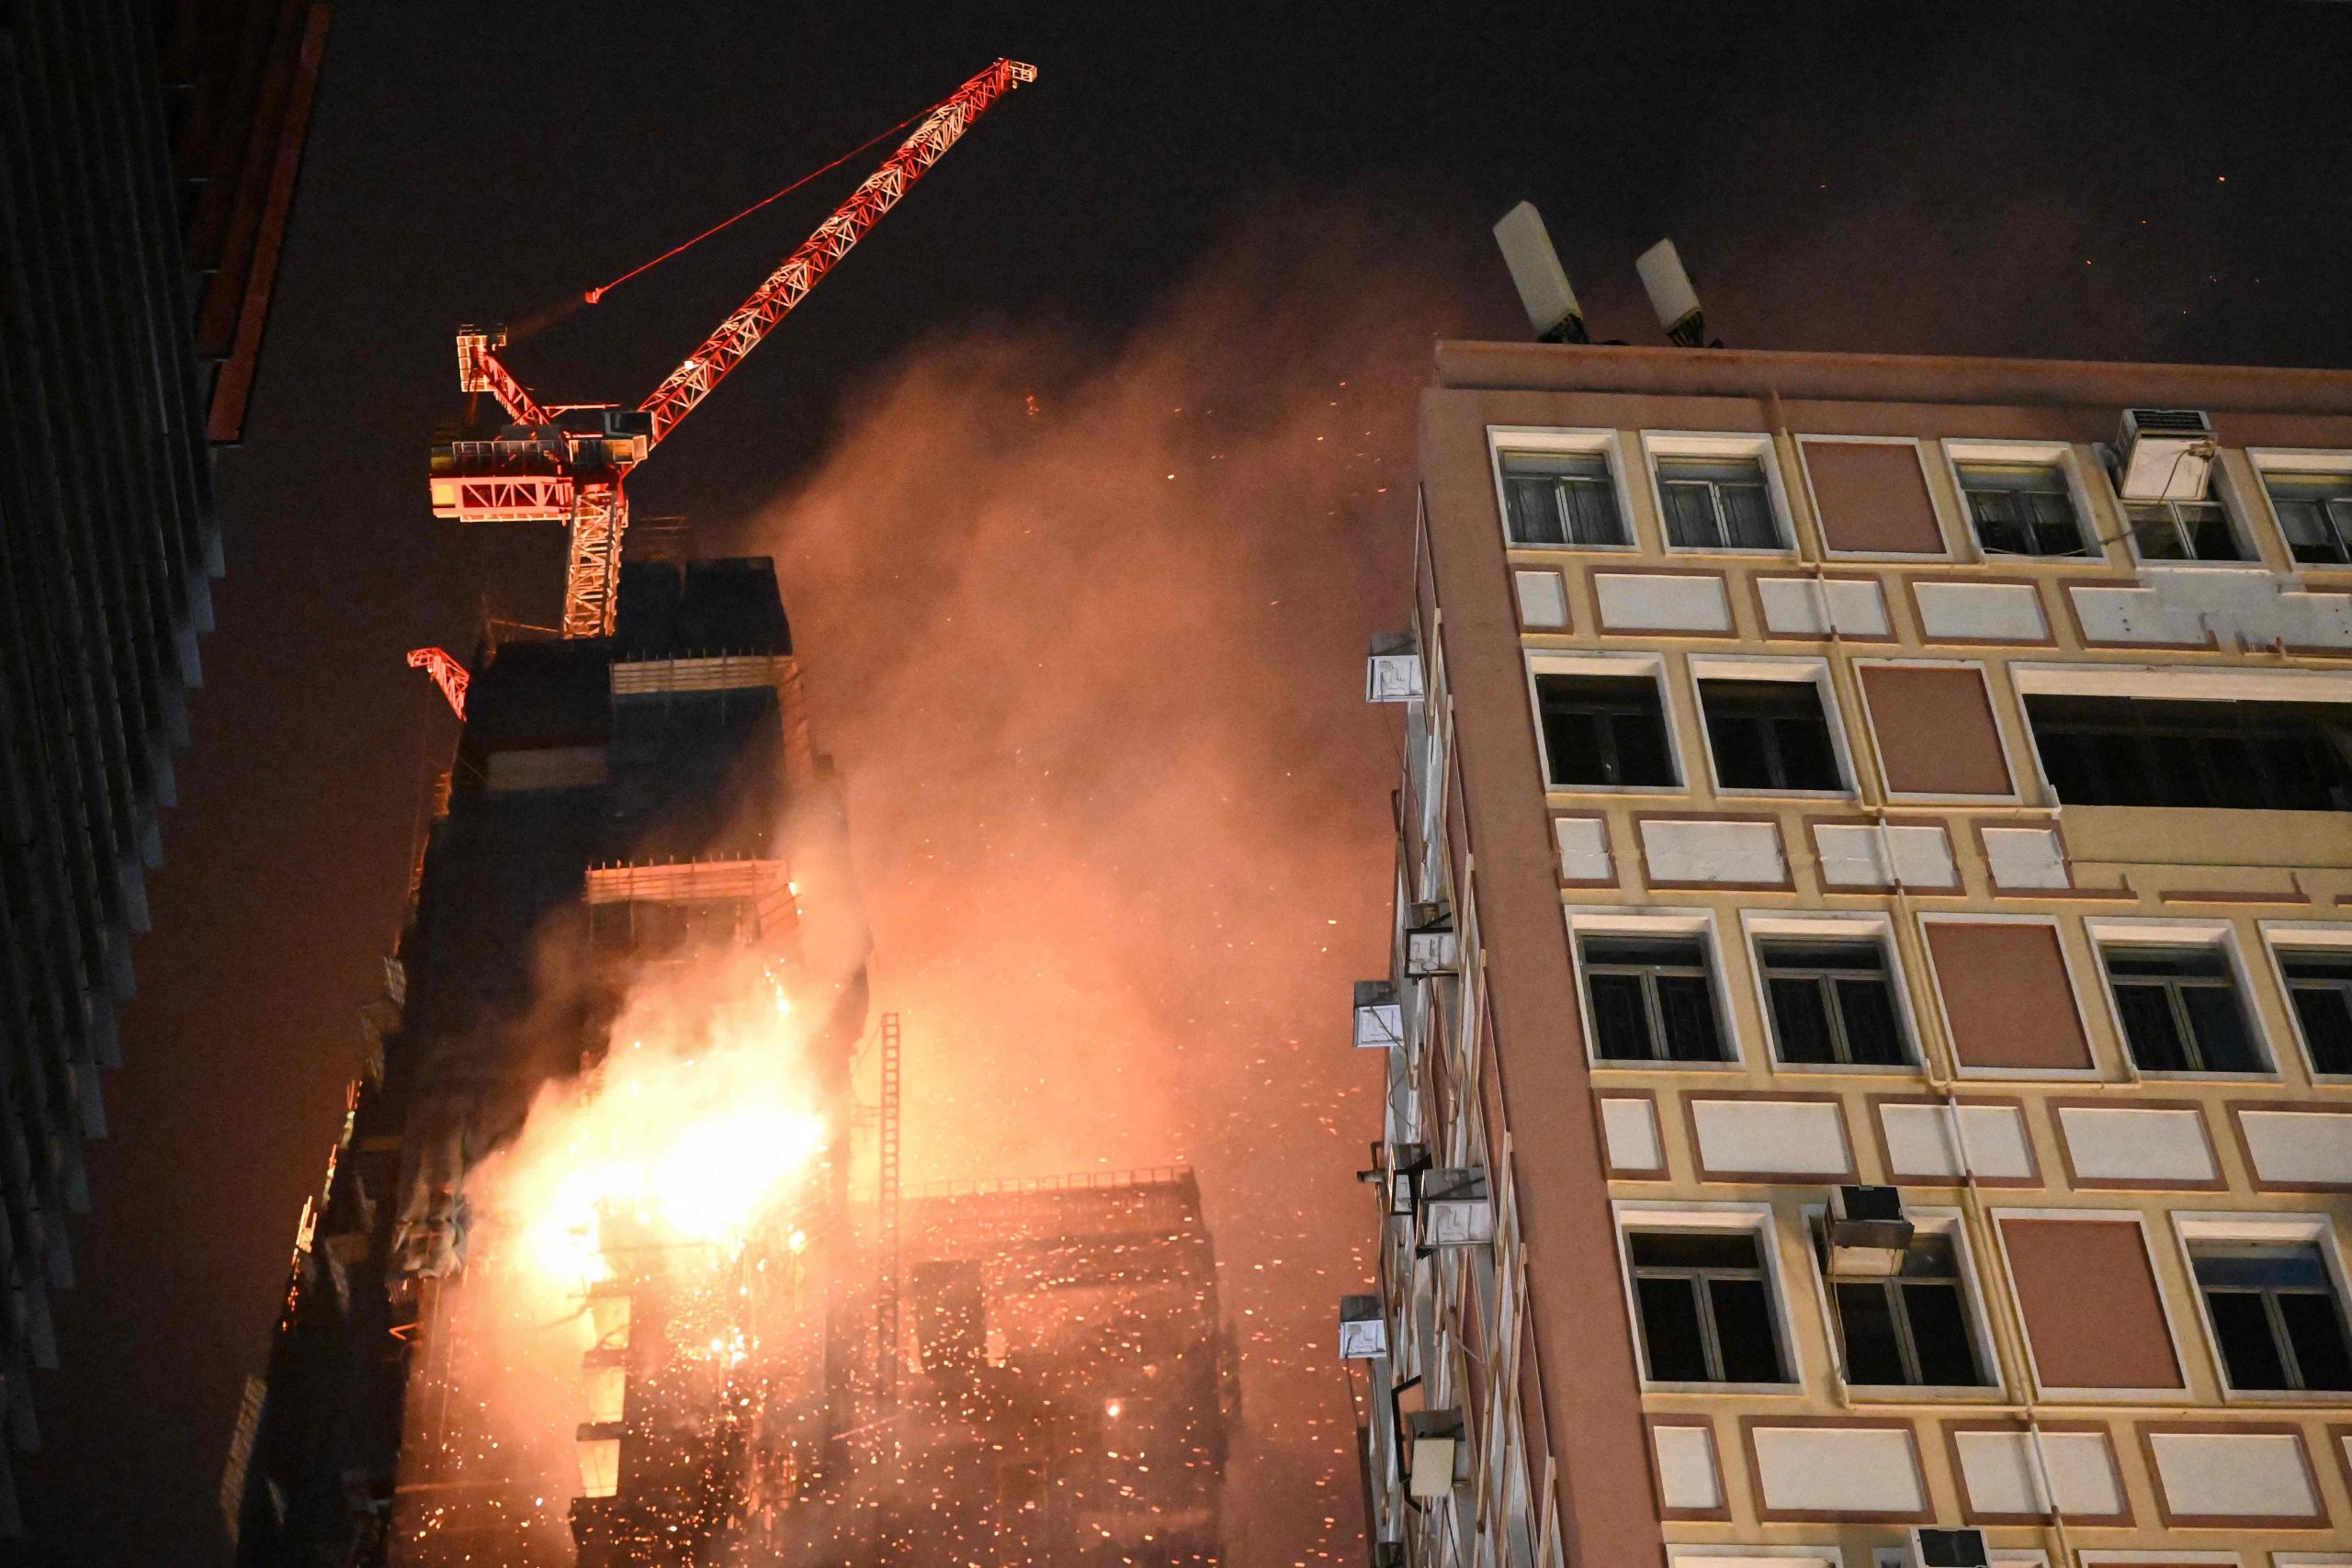    香港尖沙咀42楼大厦深夜恶火已2伤 火势延烧6大楼 波及喜来登